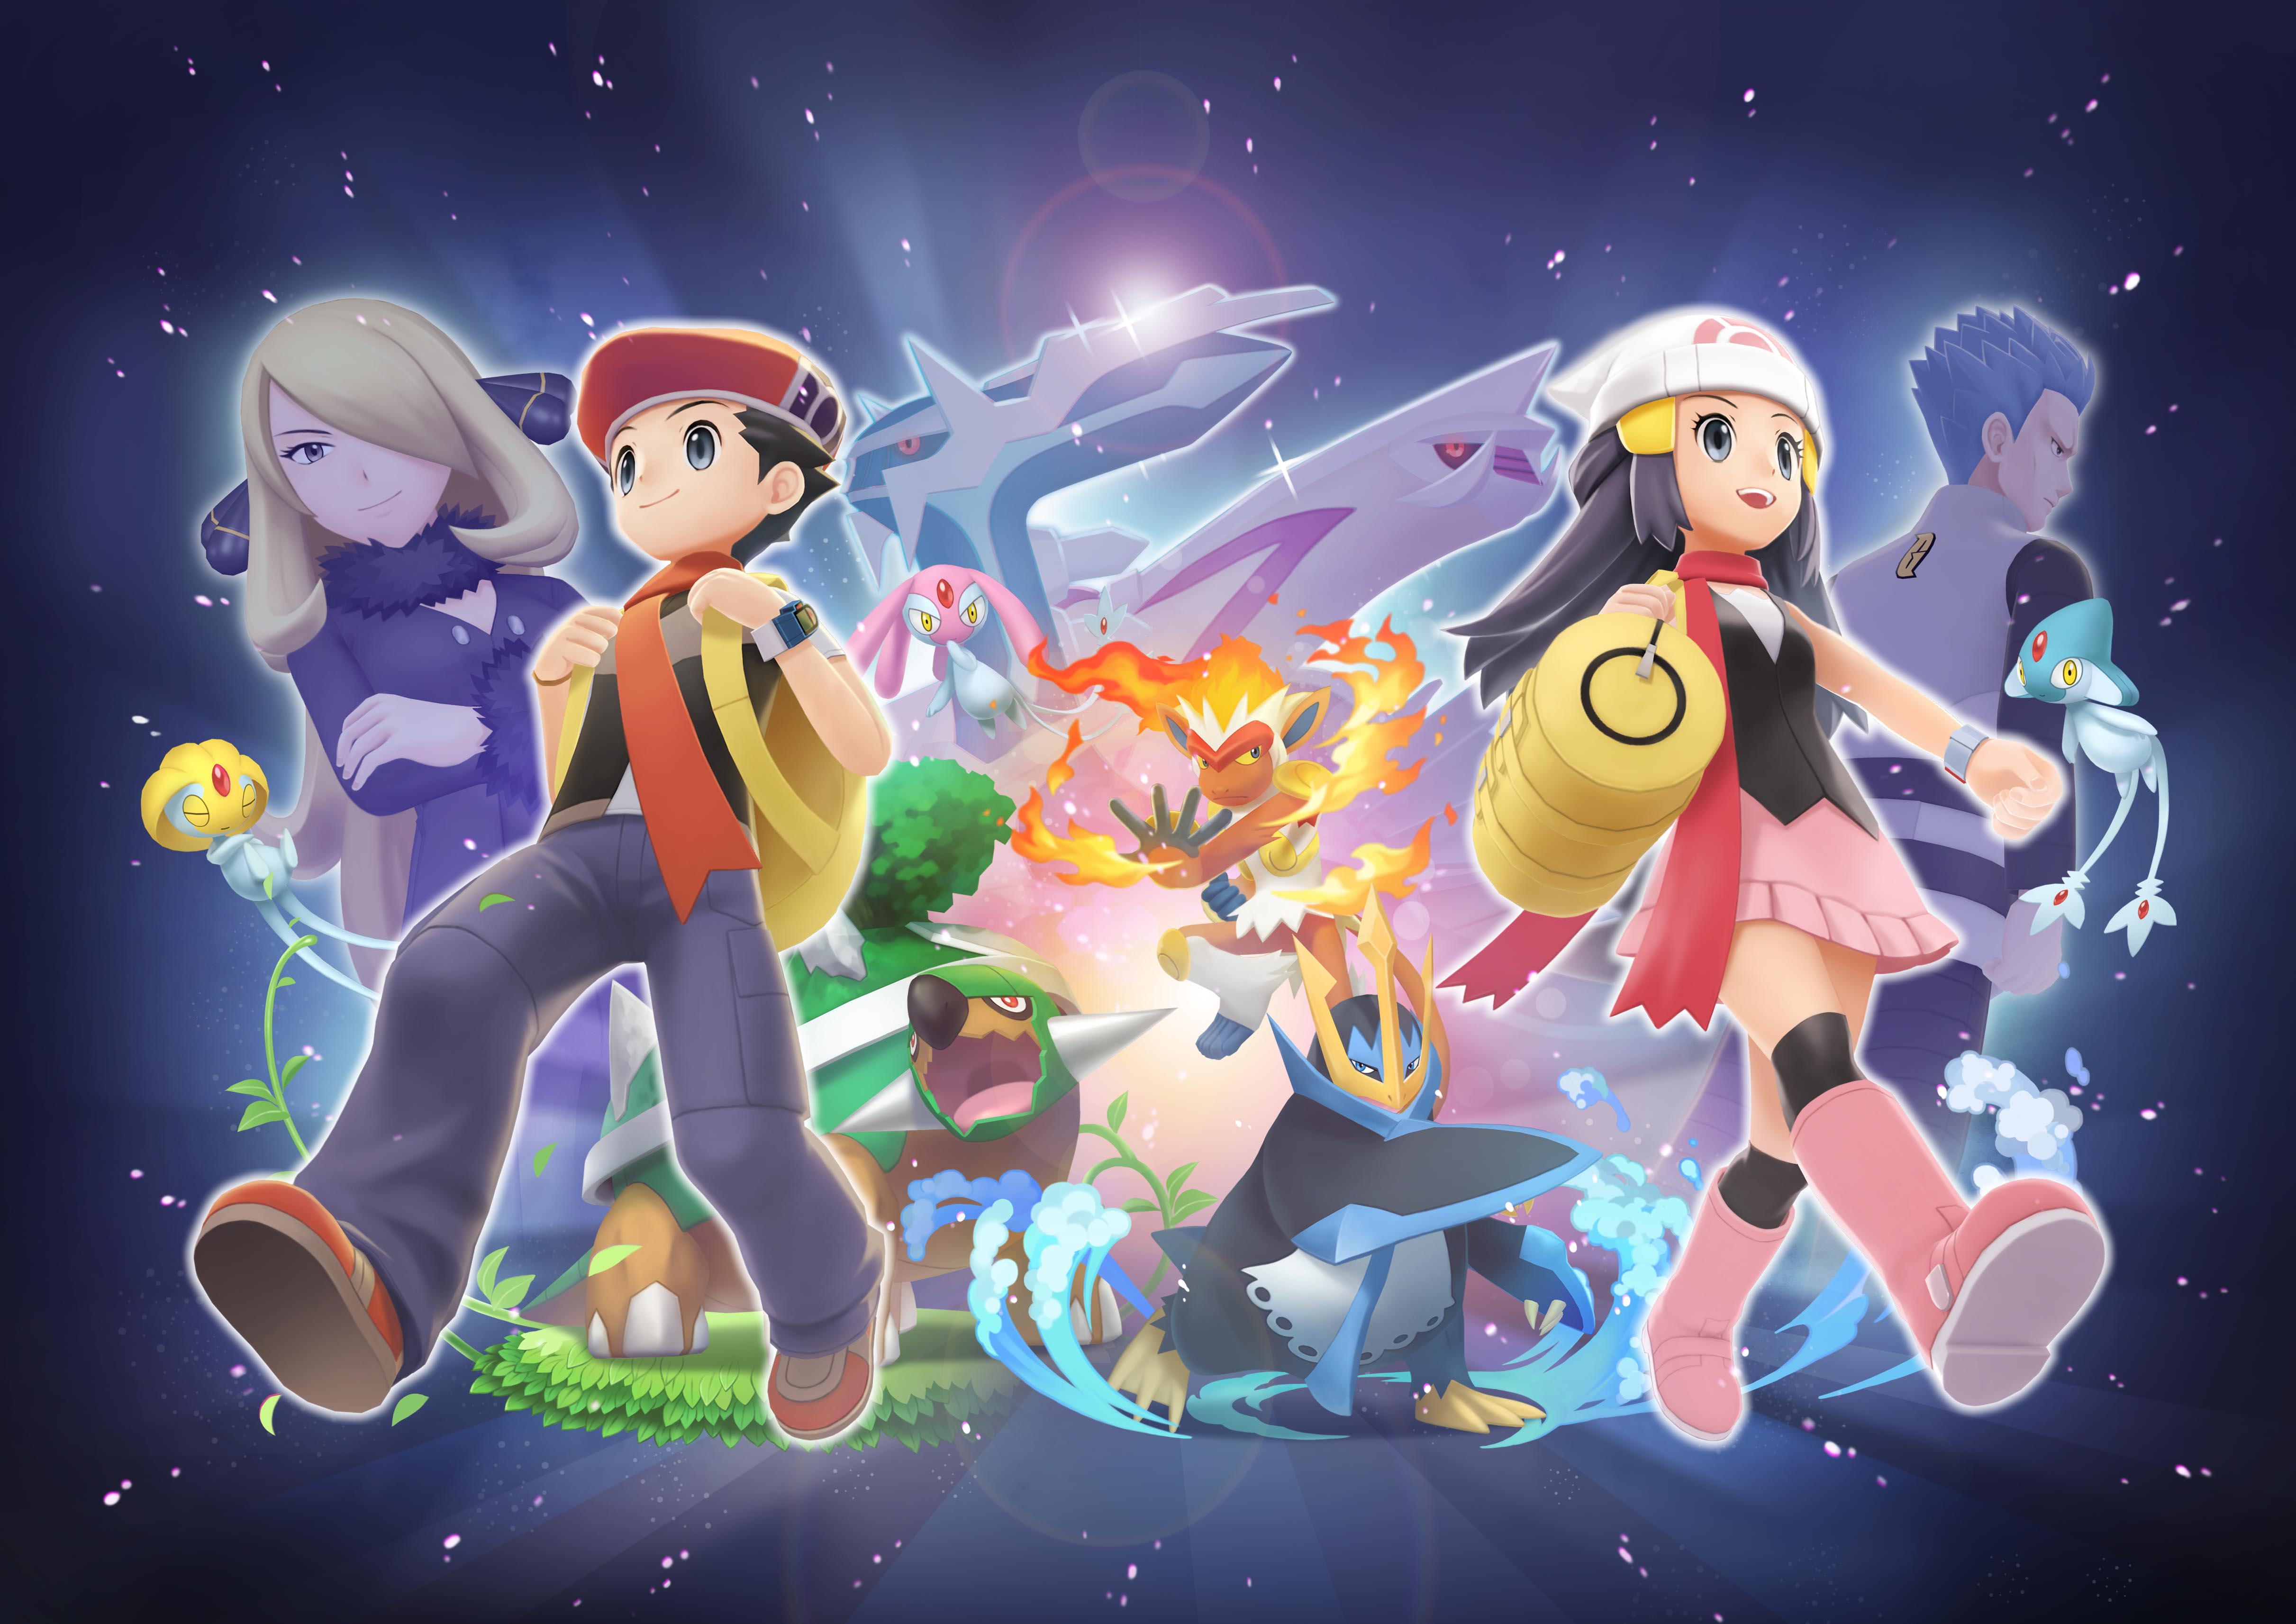 เตรียมพบกับเหล่าโปเกมอนในตำนาน และพบกับโบนัสจากการเชื่อมต่อเซฟเกมในเกม Pokémon Brilliant Diamond และ Pokémon Shining Pearl